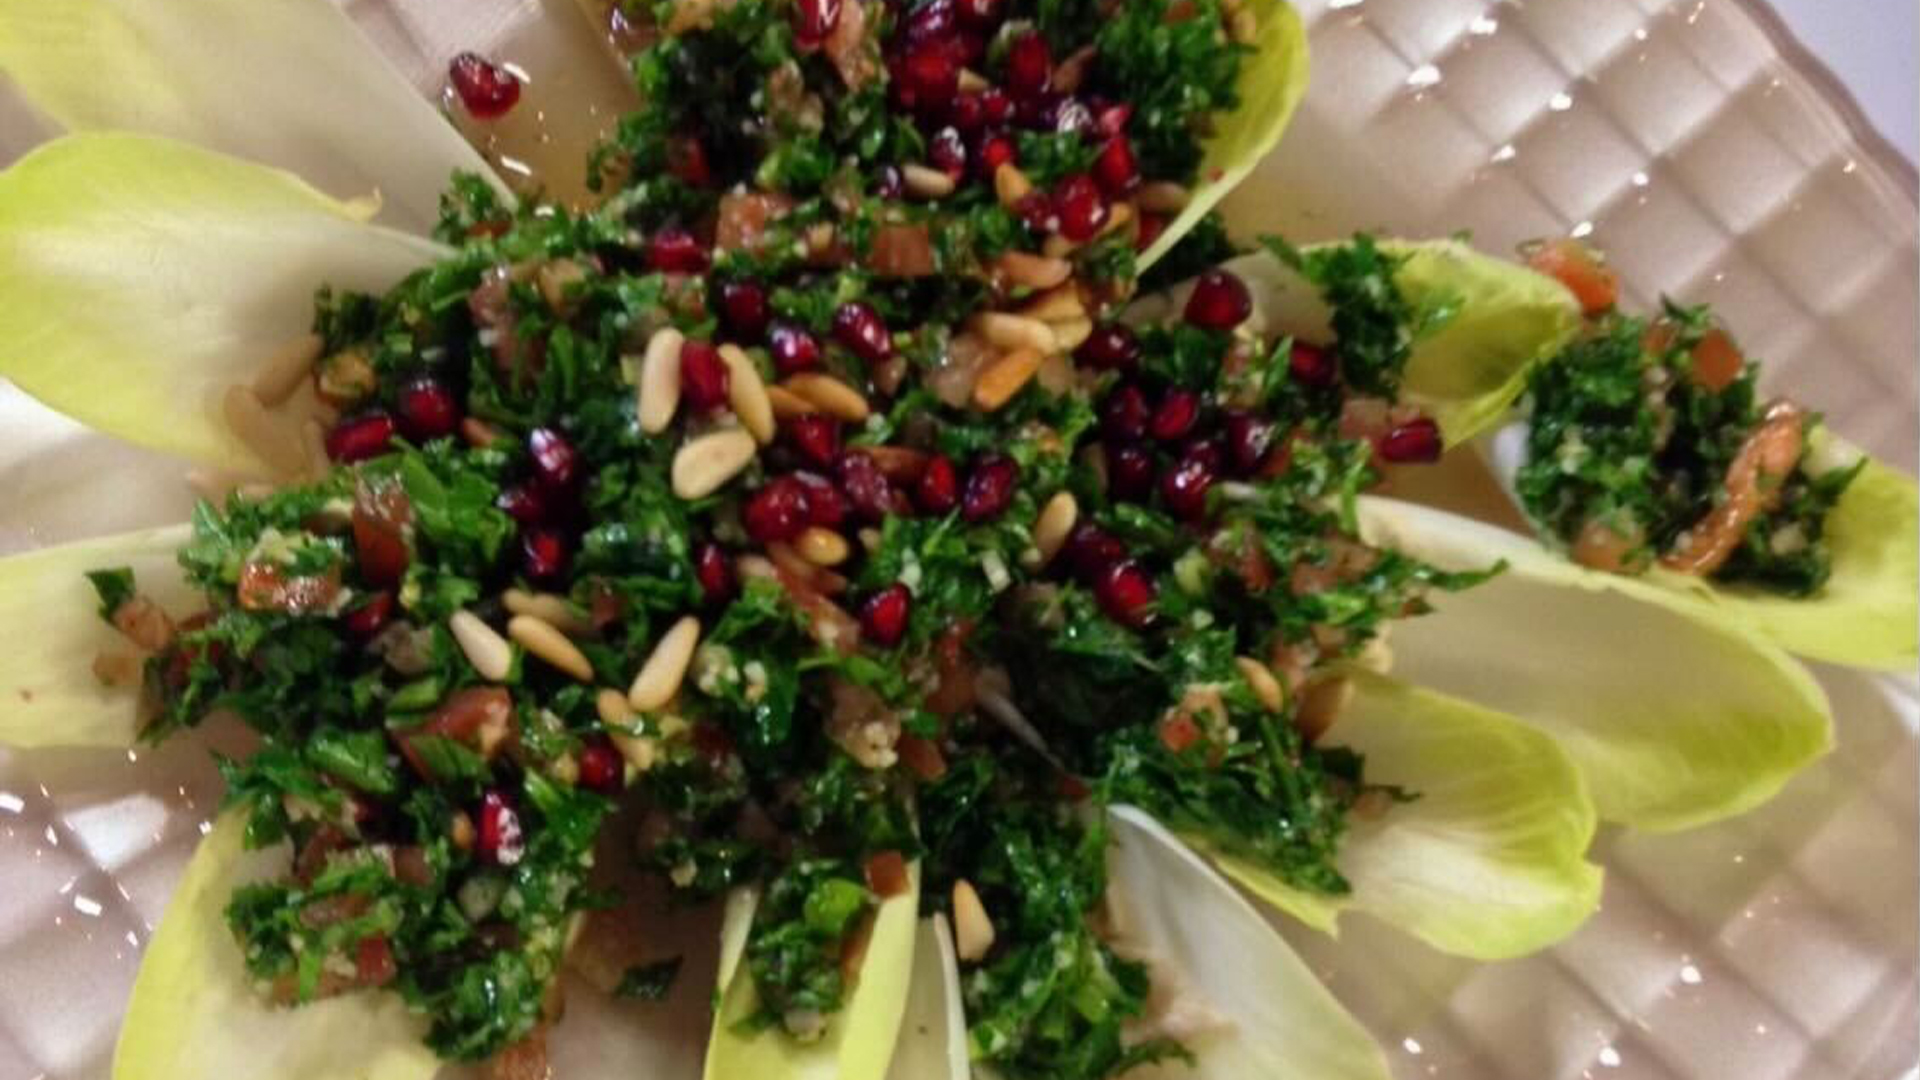 Tabbouleh salad